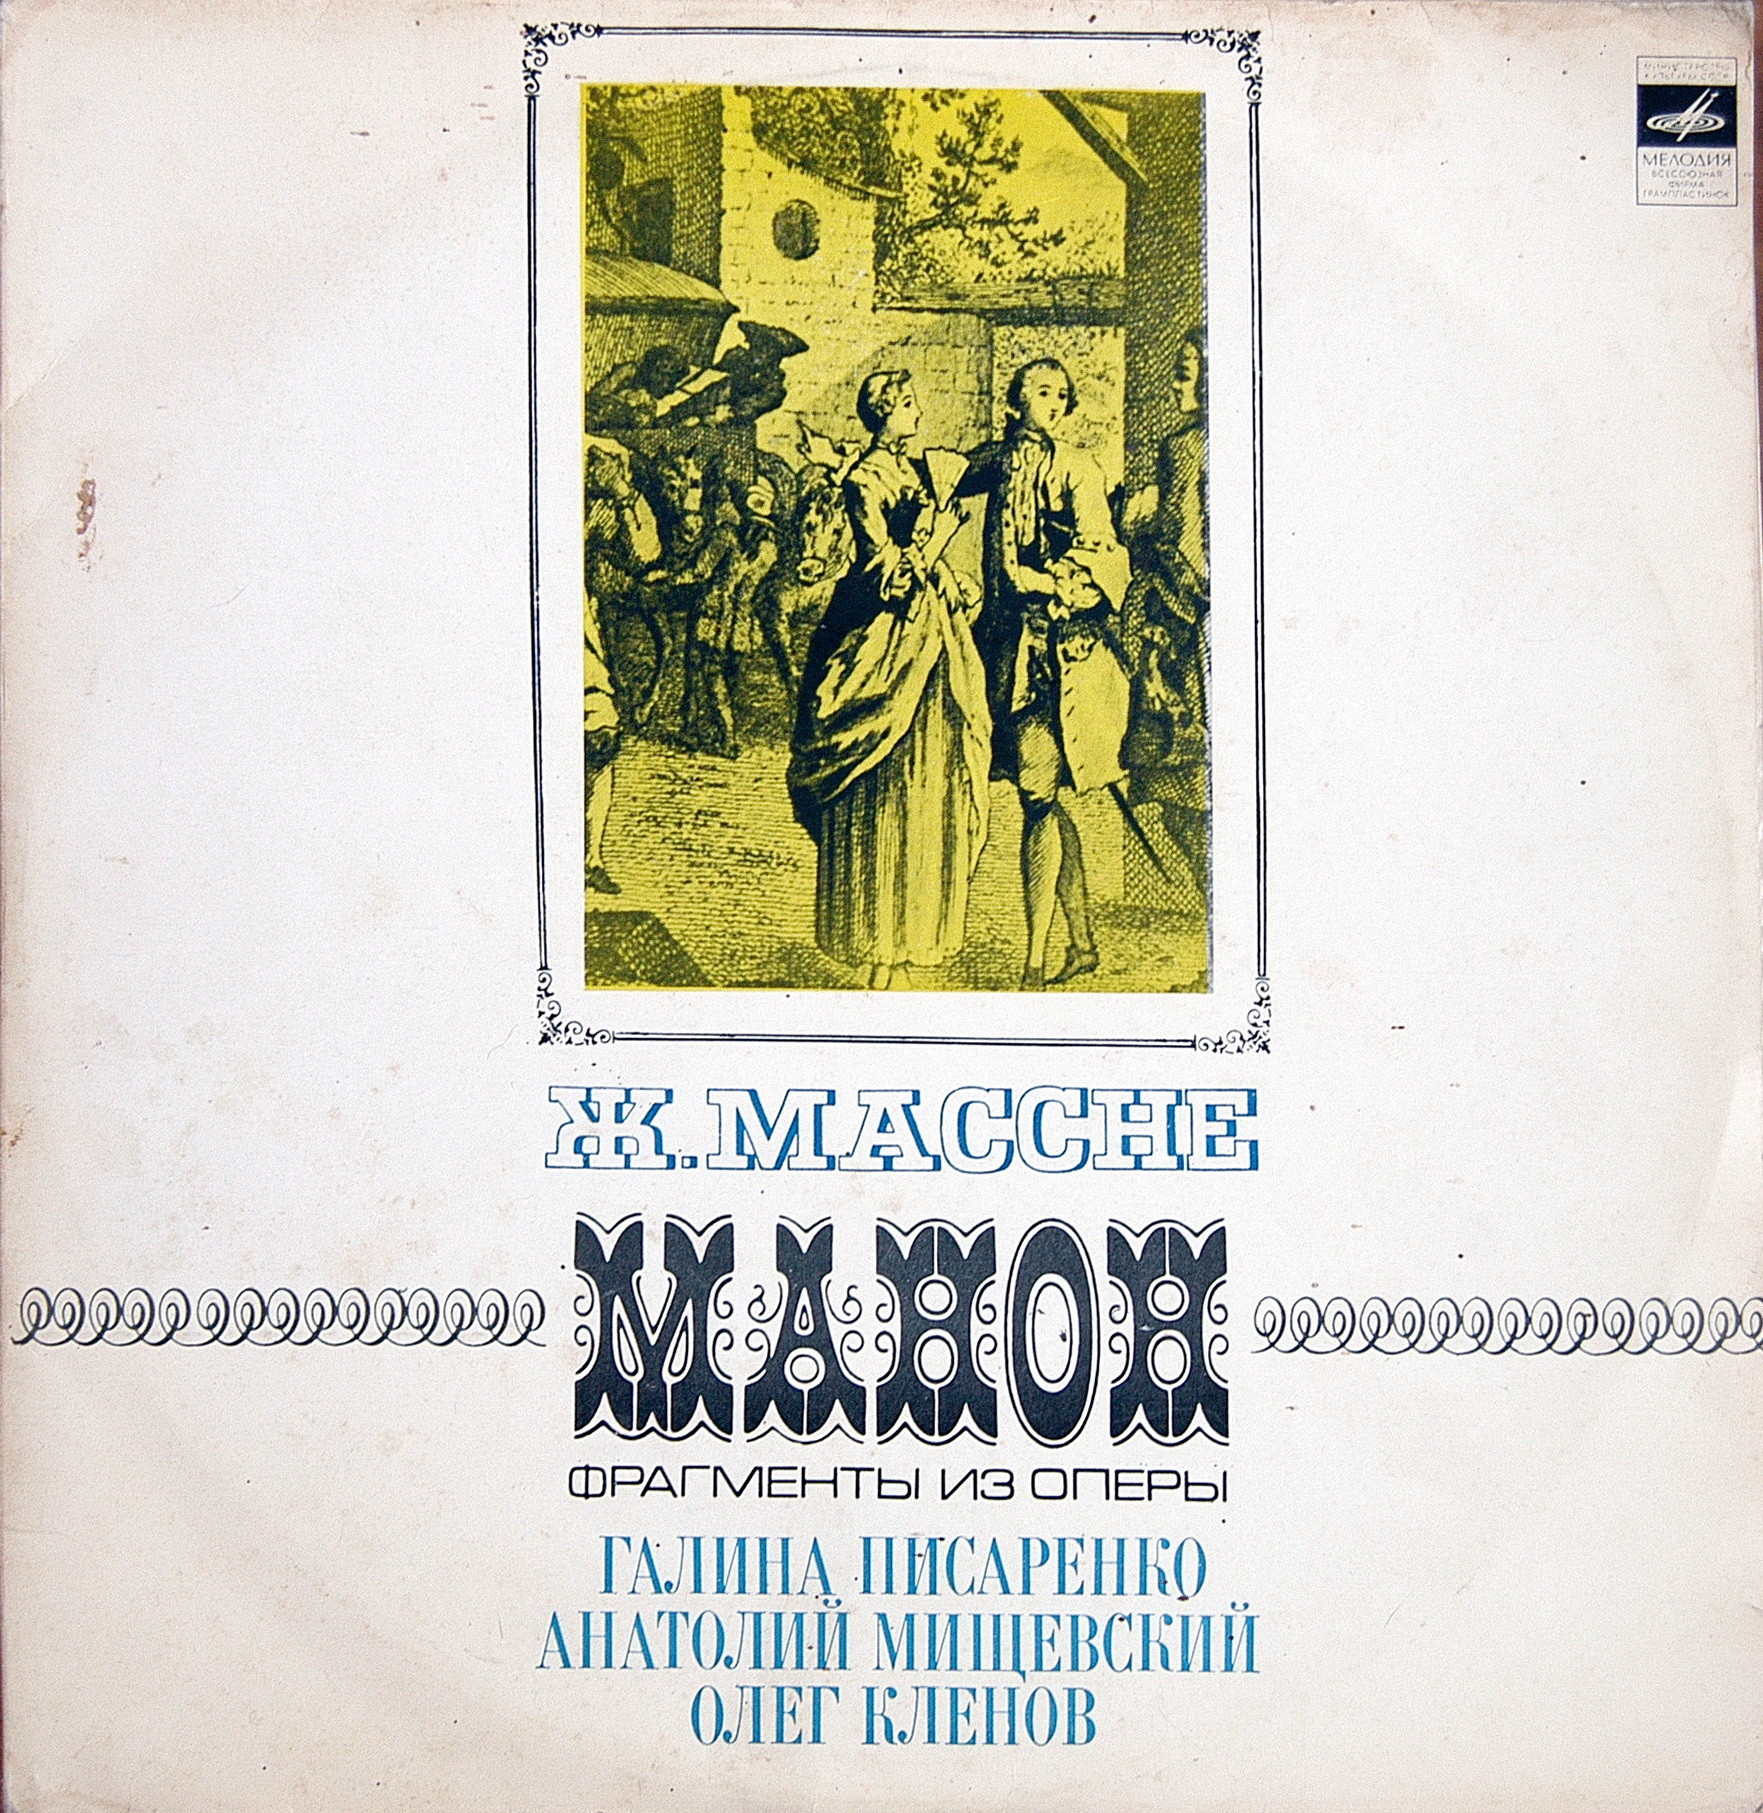 Ж. МАССНЕ (1842-1912): «Манон», фрагменты из оперы